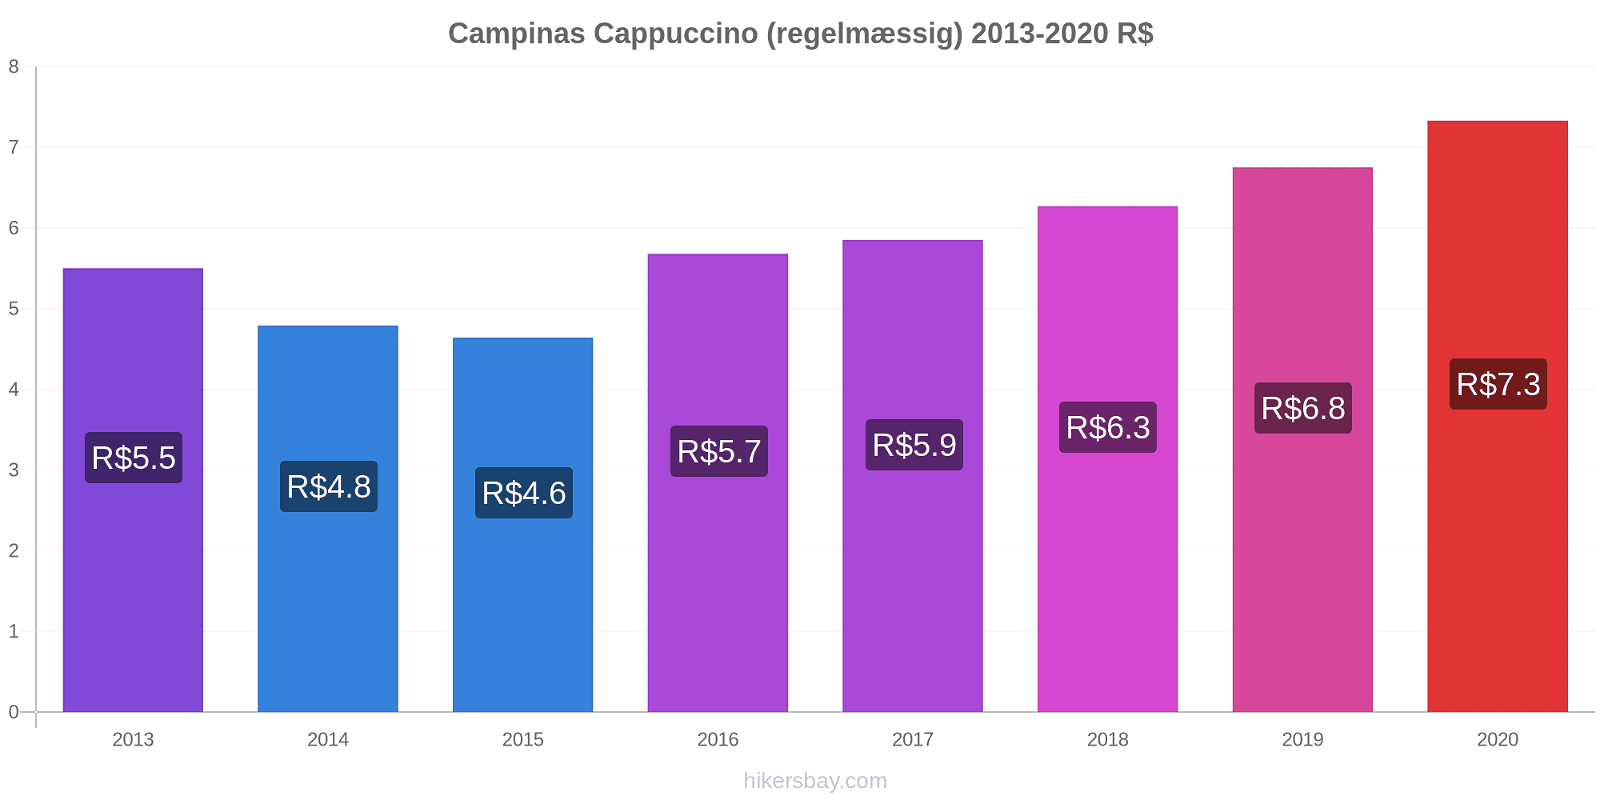 Campinas prisændringer Cappuccino (regelmæssig) hikersbay.com